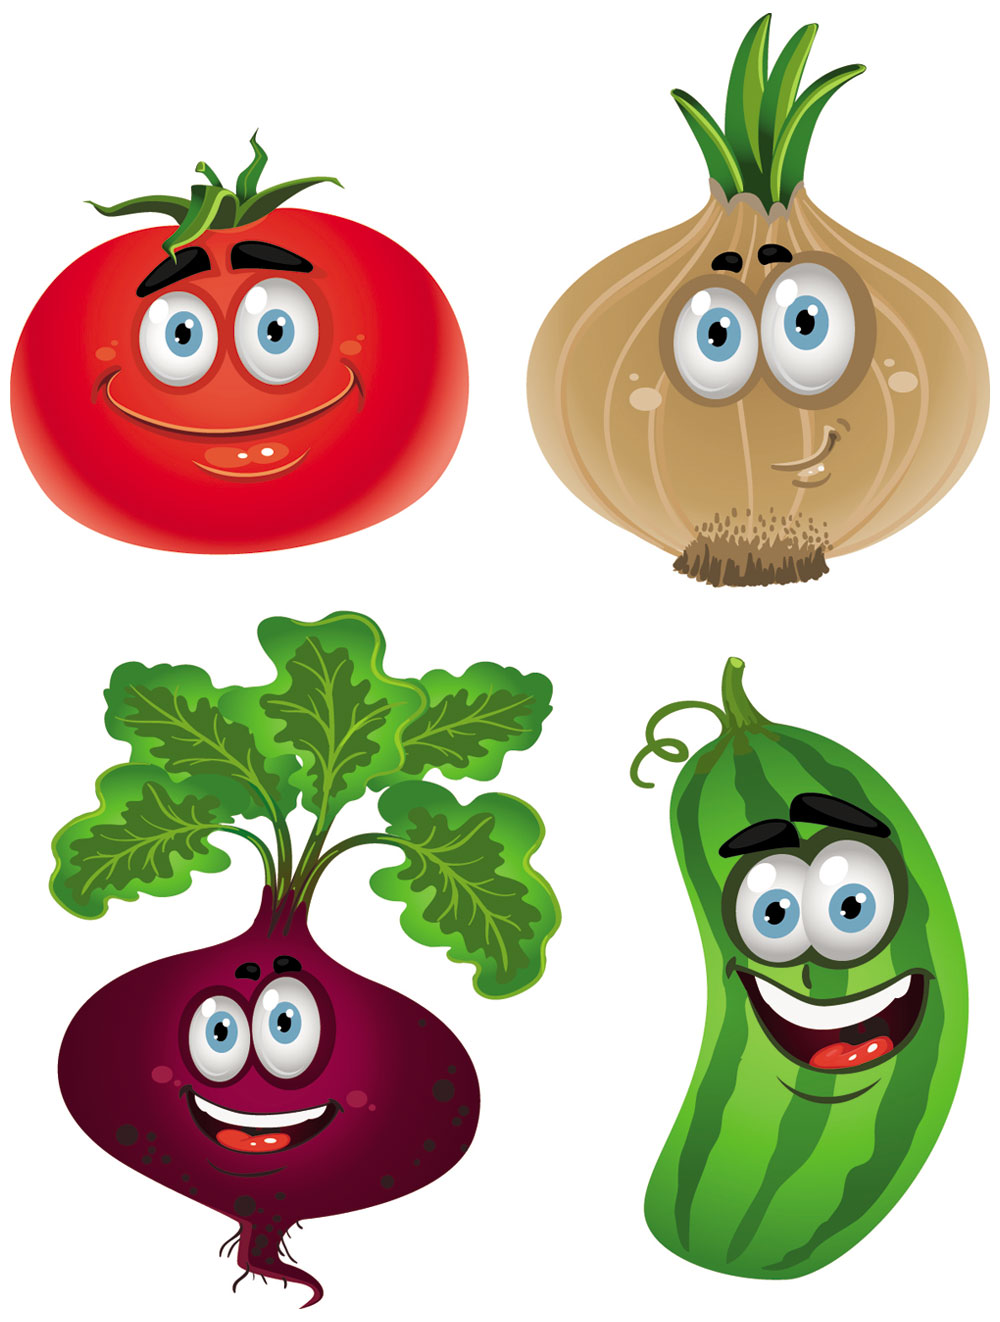 Vegetable Cartoon Image Vector 5   Download Free Vectors